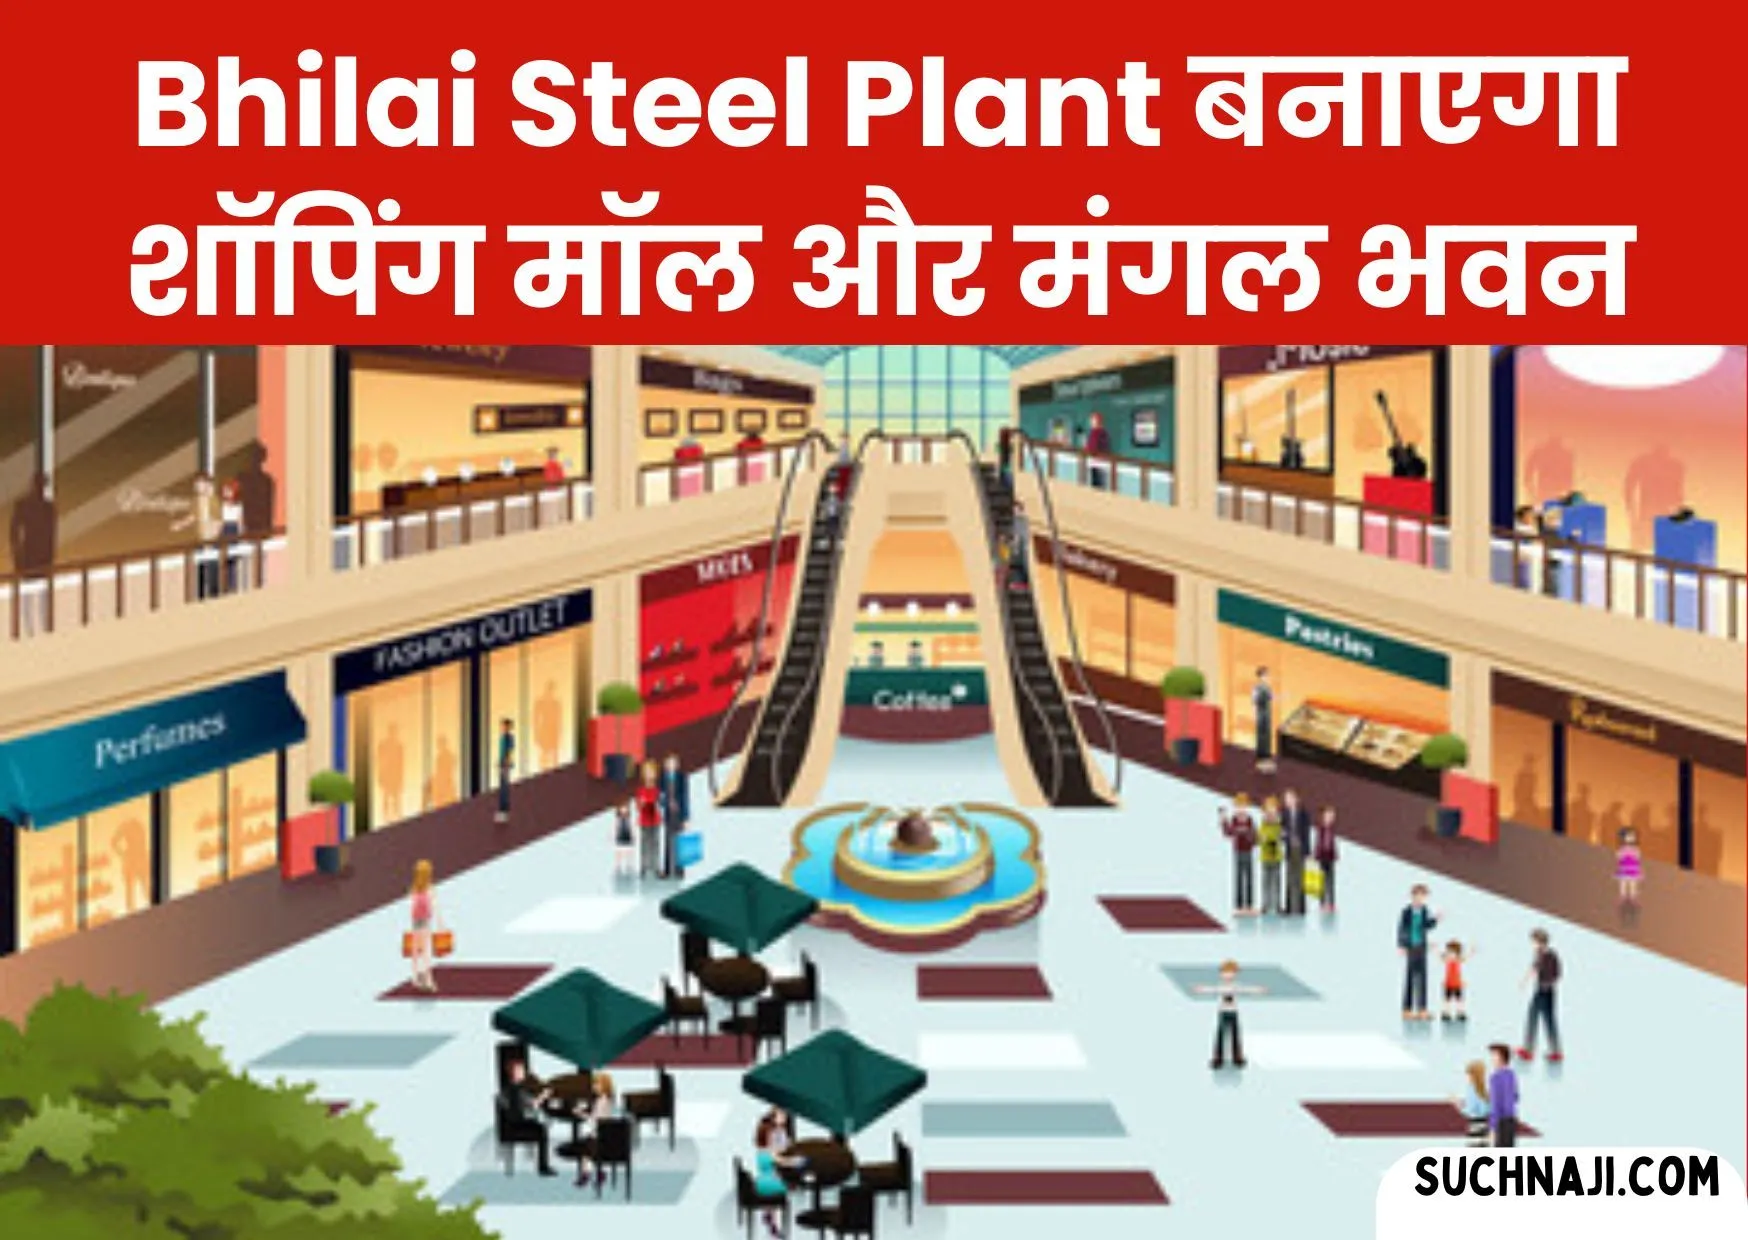 Bhilai Steel Plant: भिलाई टाउनशिप में बनने जा रहा Shopping Mall, मंगल भवन और खास बिल्डिंग